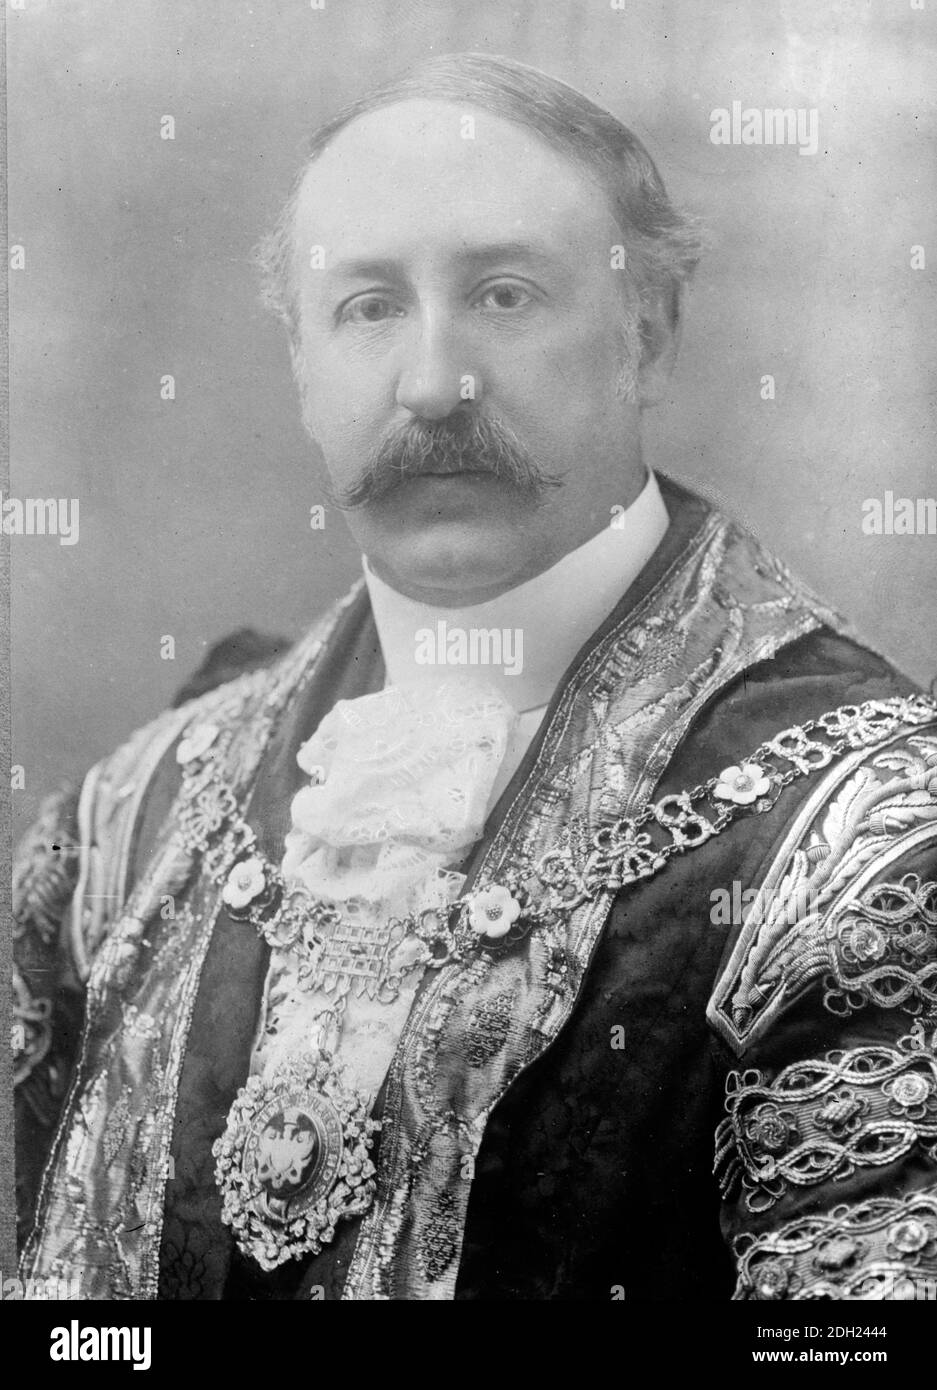 Sir Thomas Vansittart Bowater, 1er Baronet, DL (1862 – 1938) politicien du Parti conservateur britannique qui a servi comme maire de Londres de 1913 à 1914 Banque D'Images